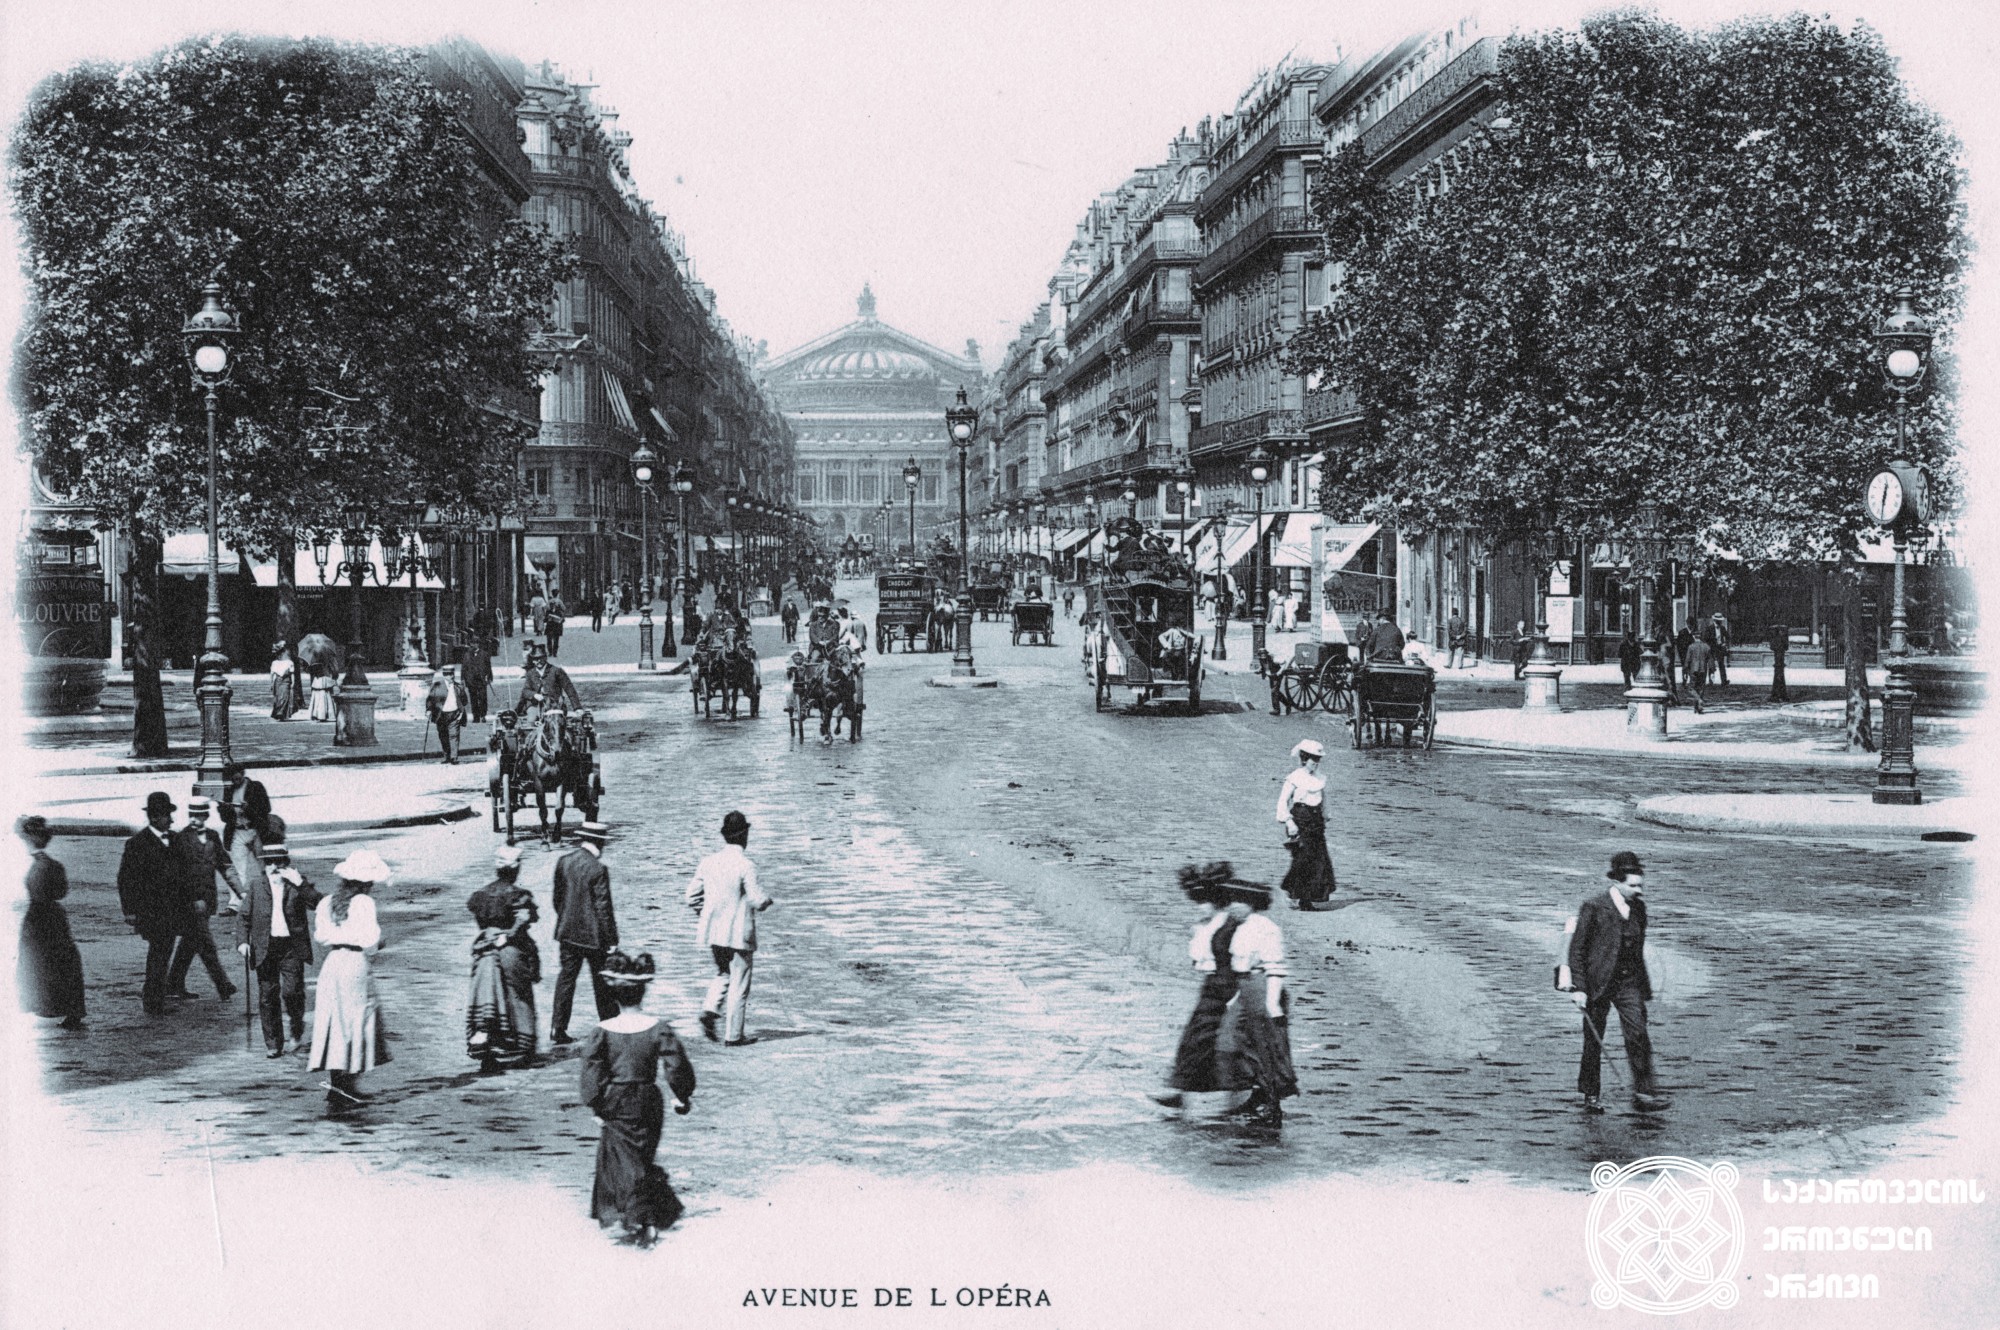 1900-იანი წლები. საფრანგეთი, პარიზი. ოპერის გამზირი. <br>
დაცულია საქართველოს ეროვნულ არქივში. <br>
1900-s. France, Paris. Opera Avenue. <br>
Preserved at the National Archives of Georgia.